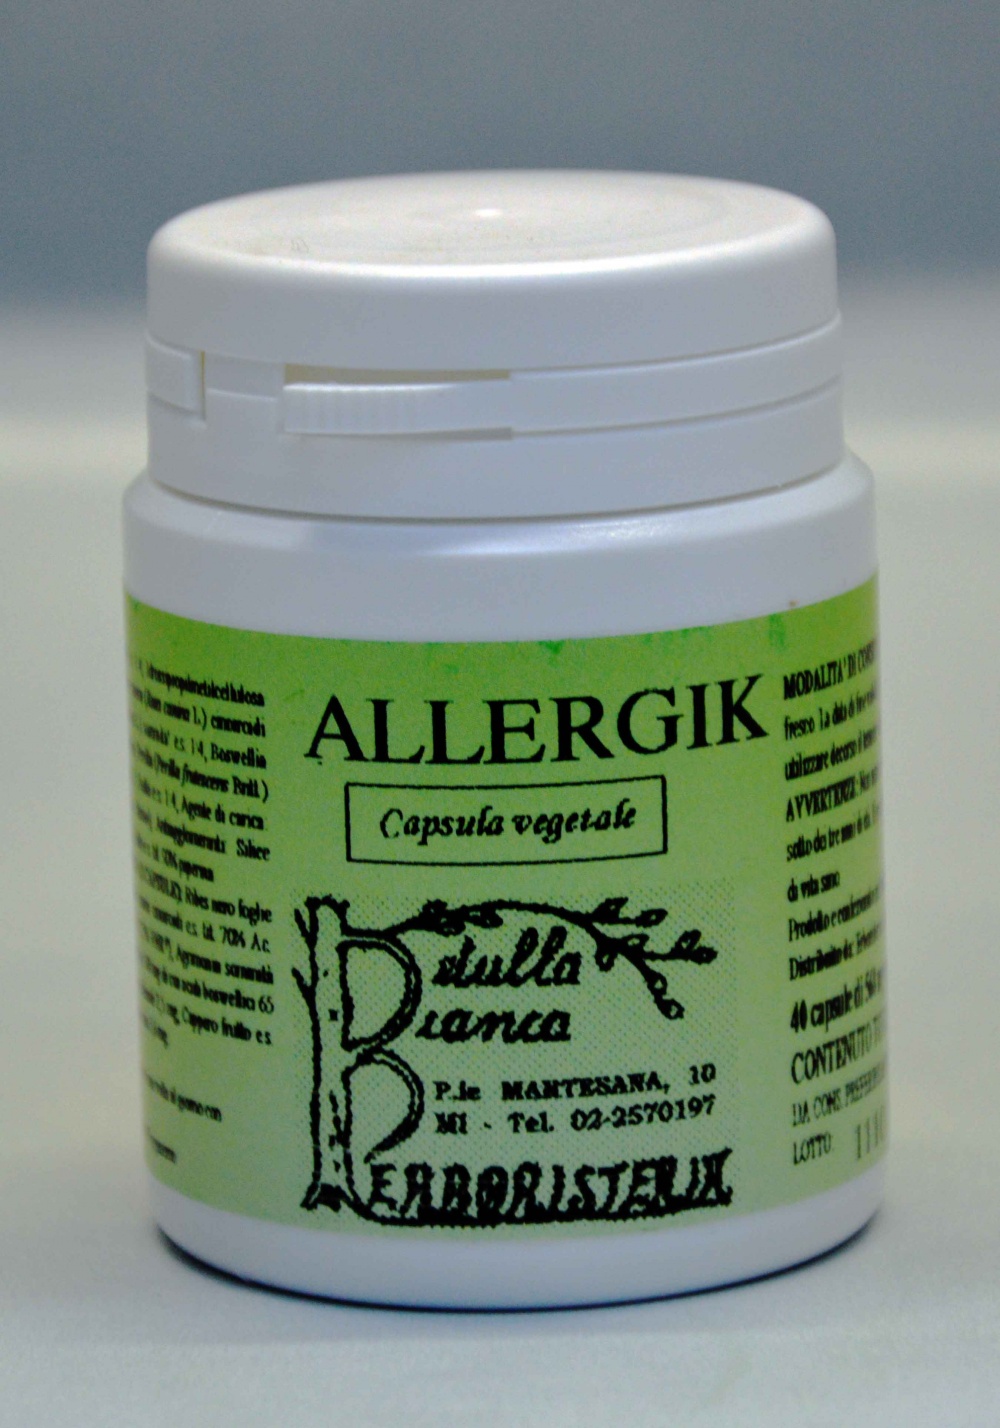 Allergik capsule